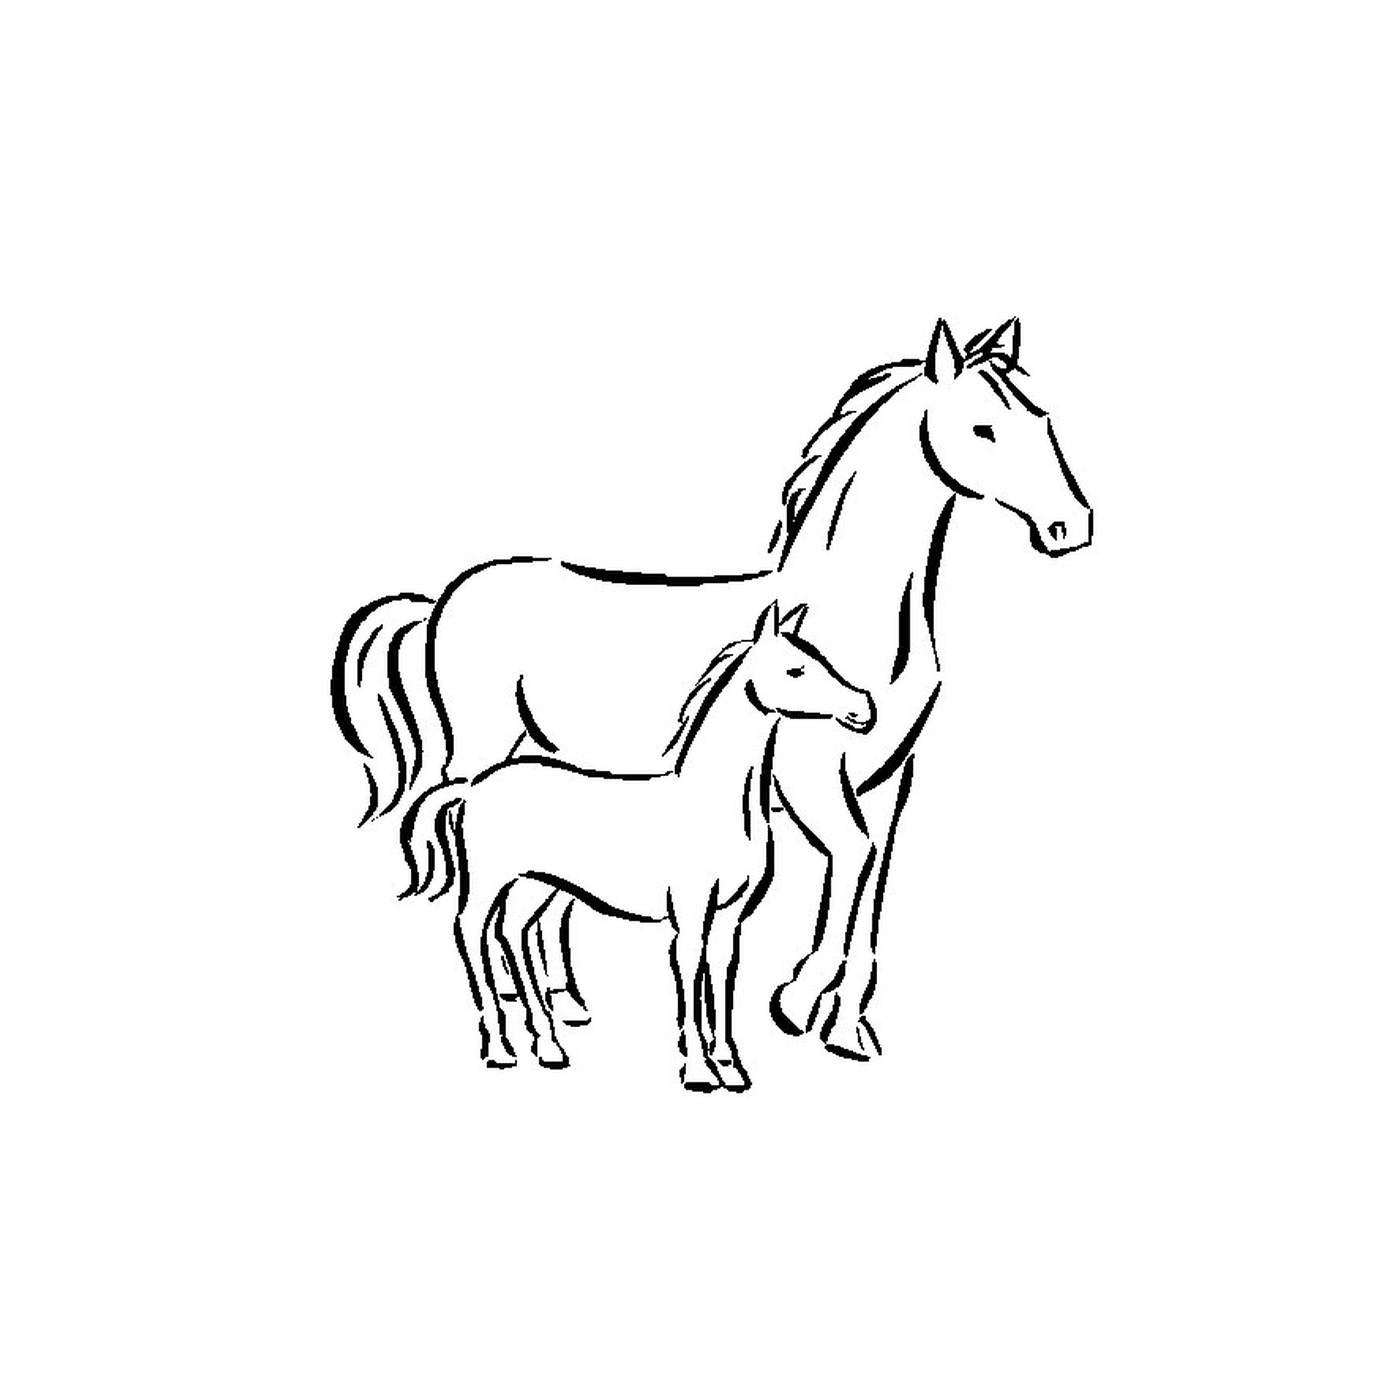  Лошади - лошадь и жеребец, стоящие бок о бок 